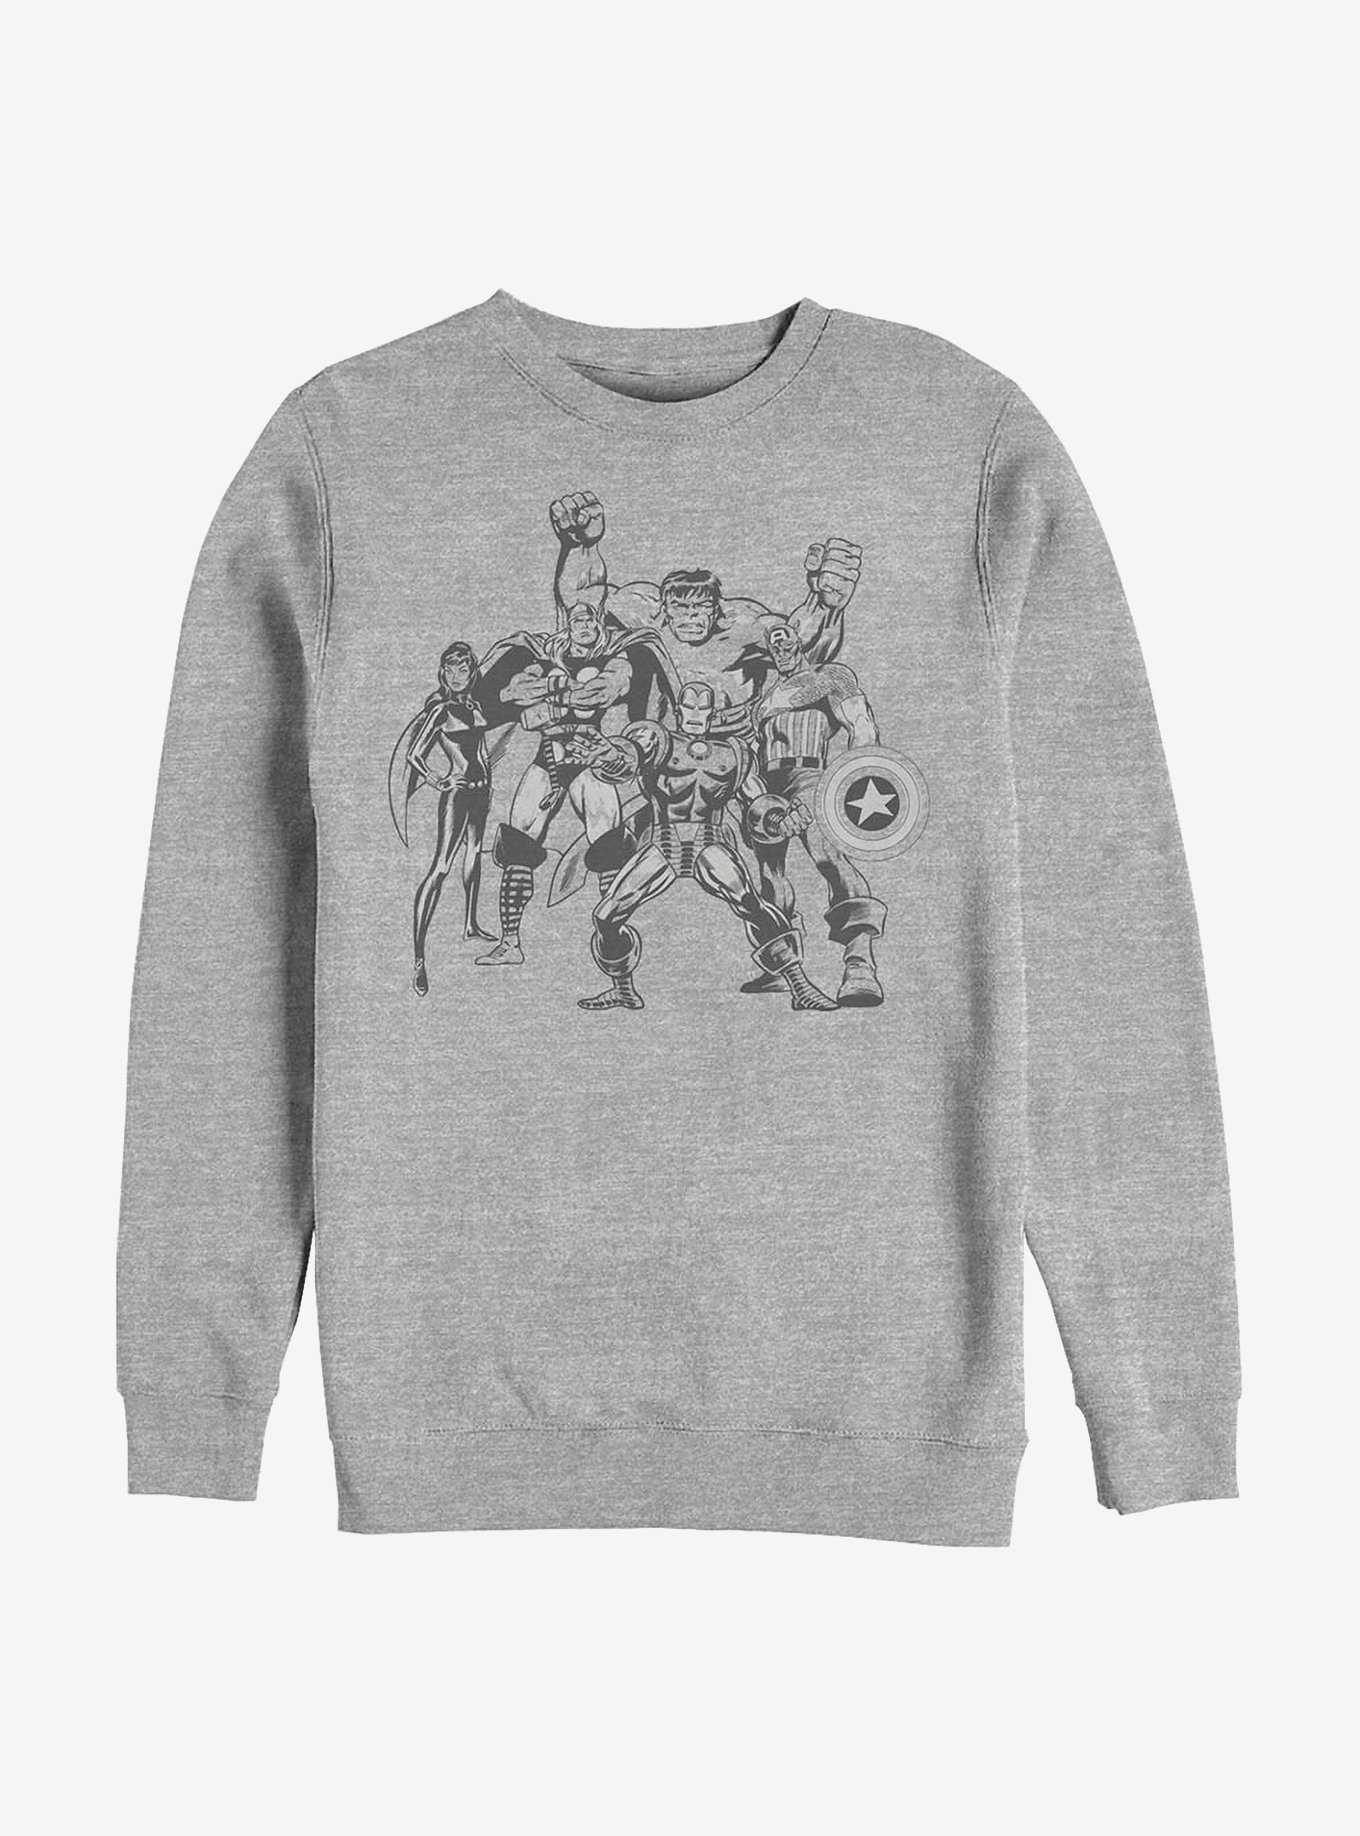 Marvel Avengers Retro Group Crew Sweatshirt, , hi-res